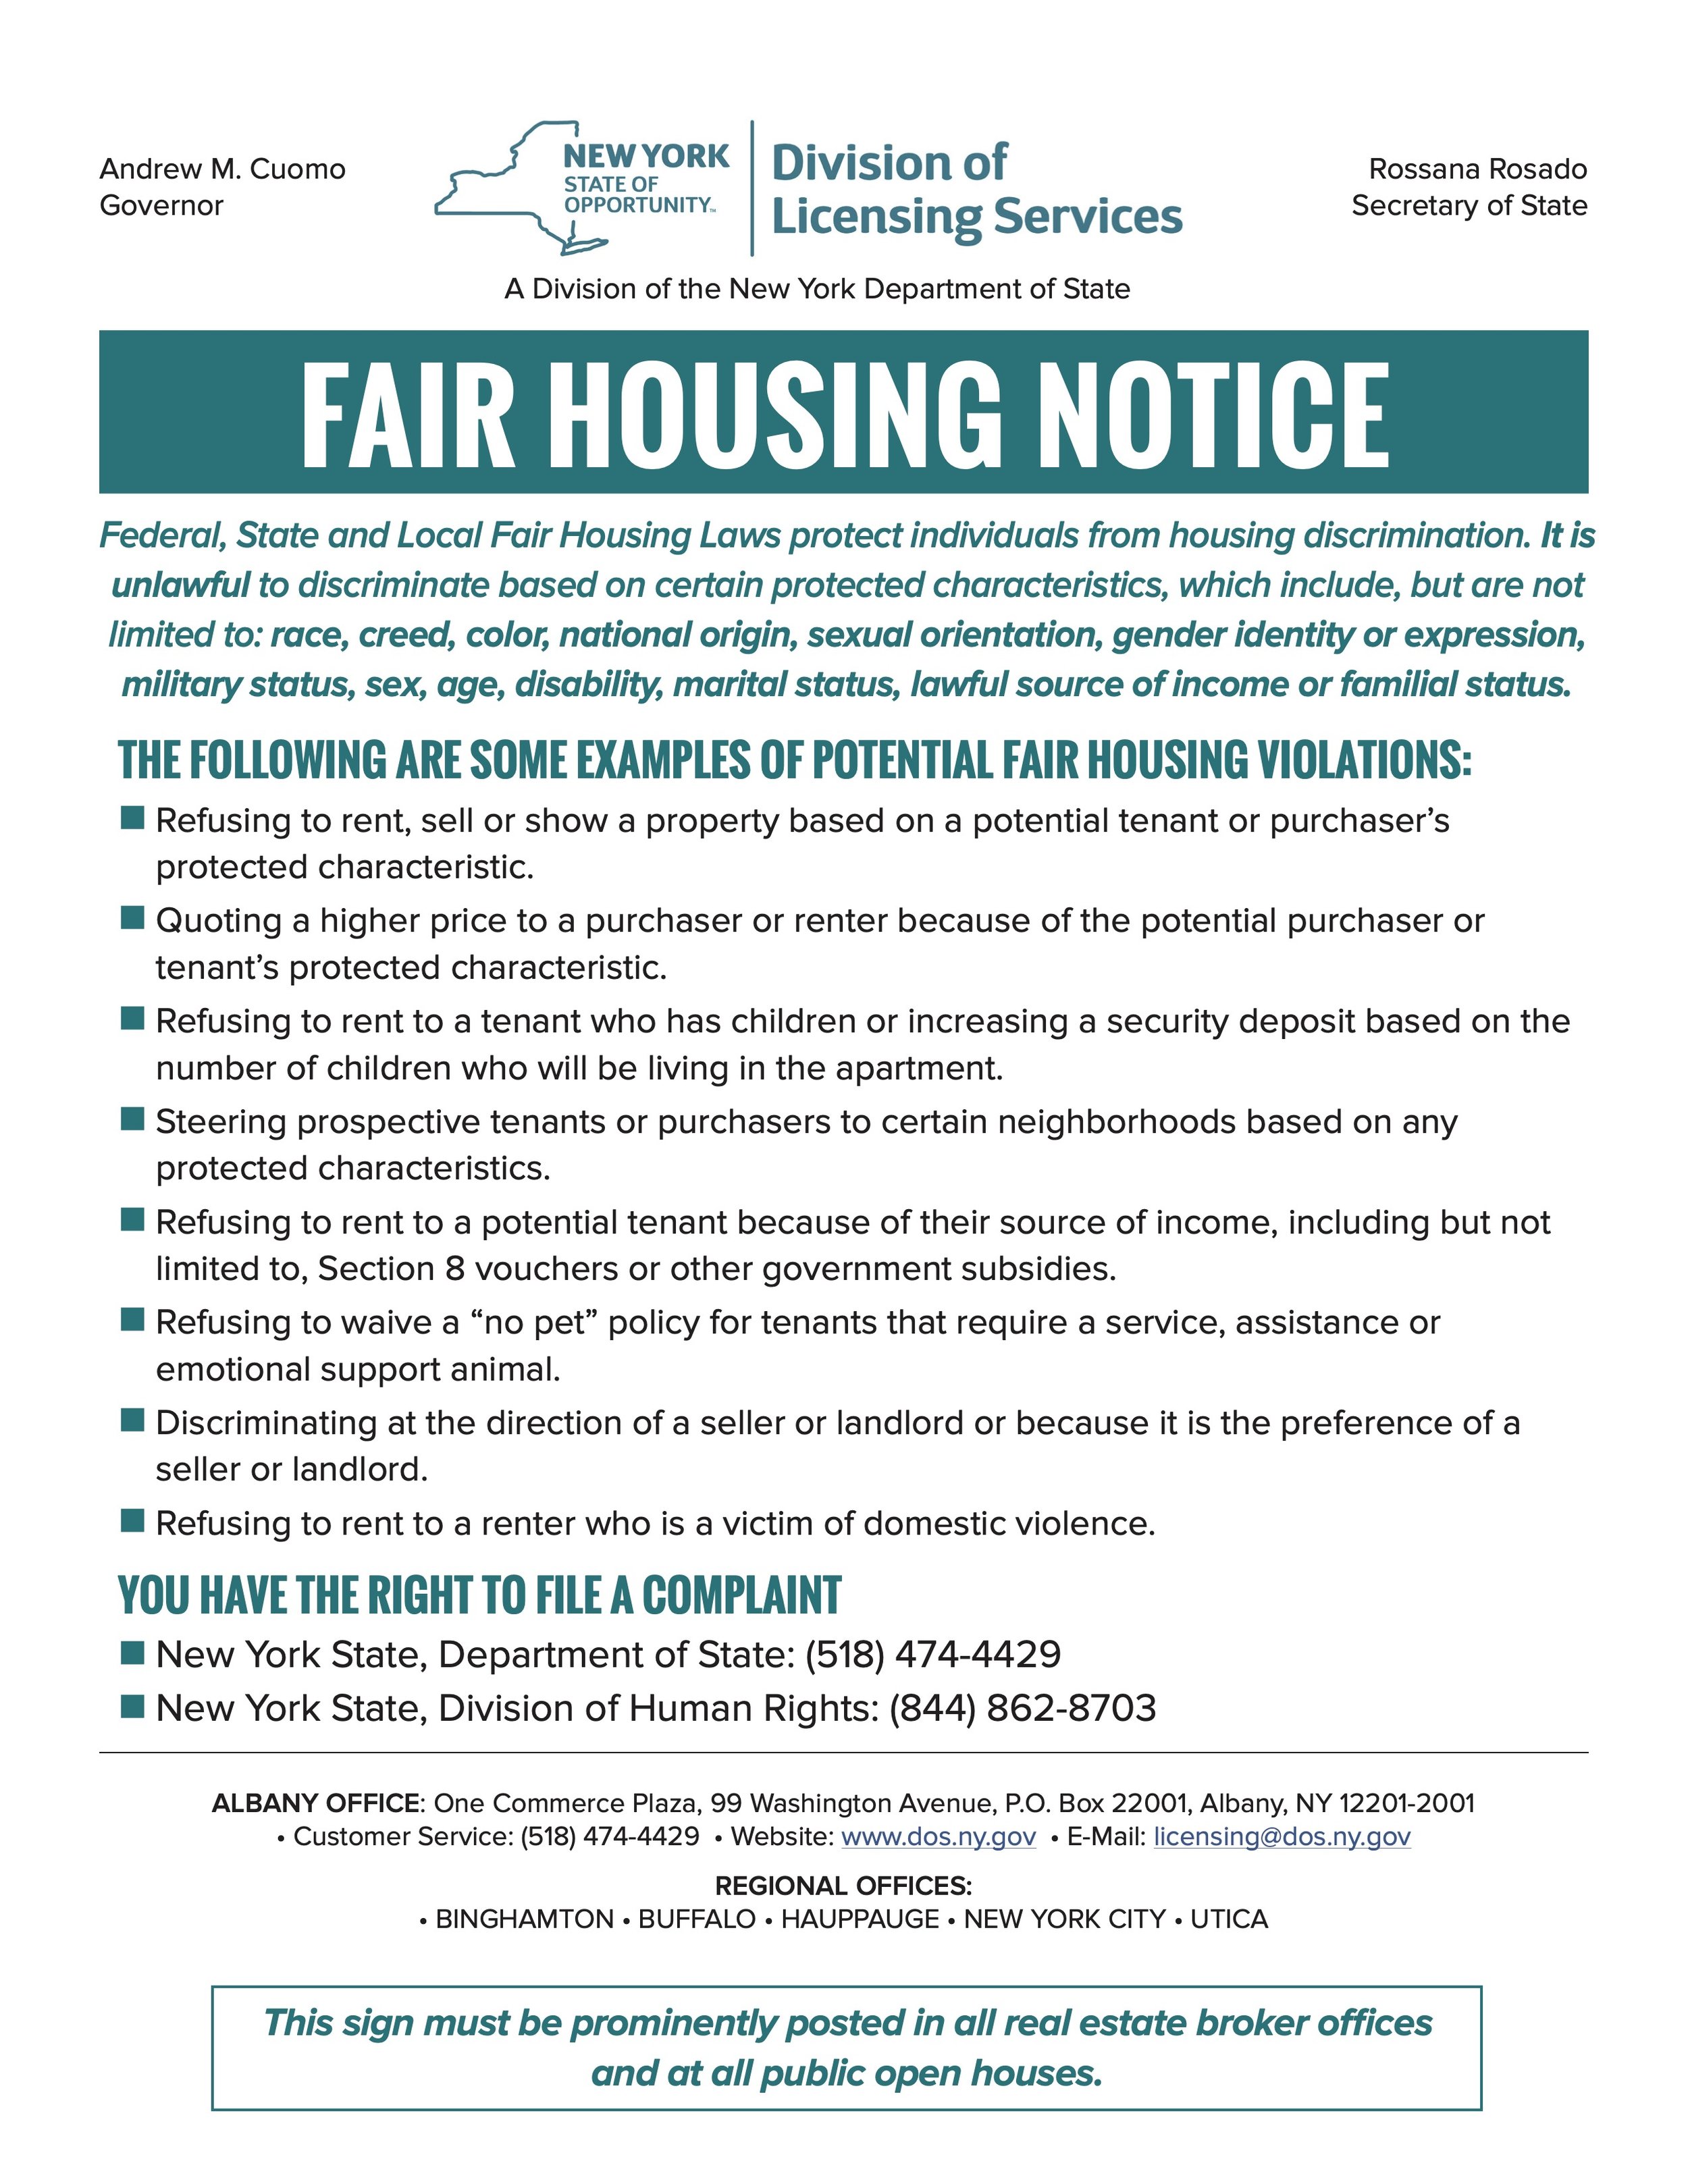 Fair Housing Disclosure.jpg